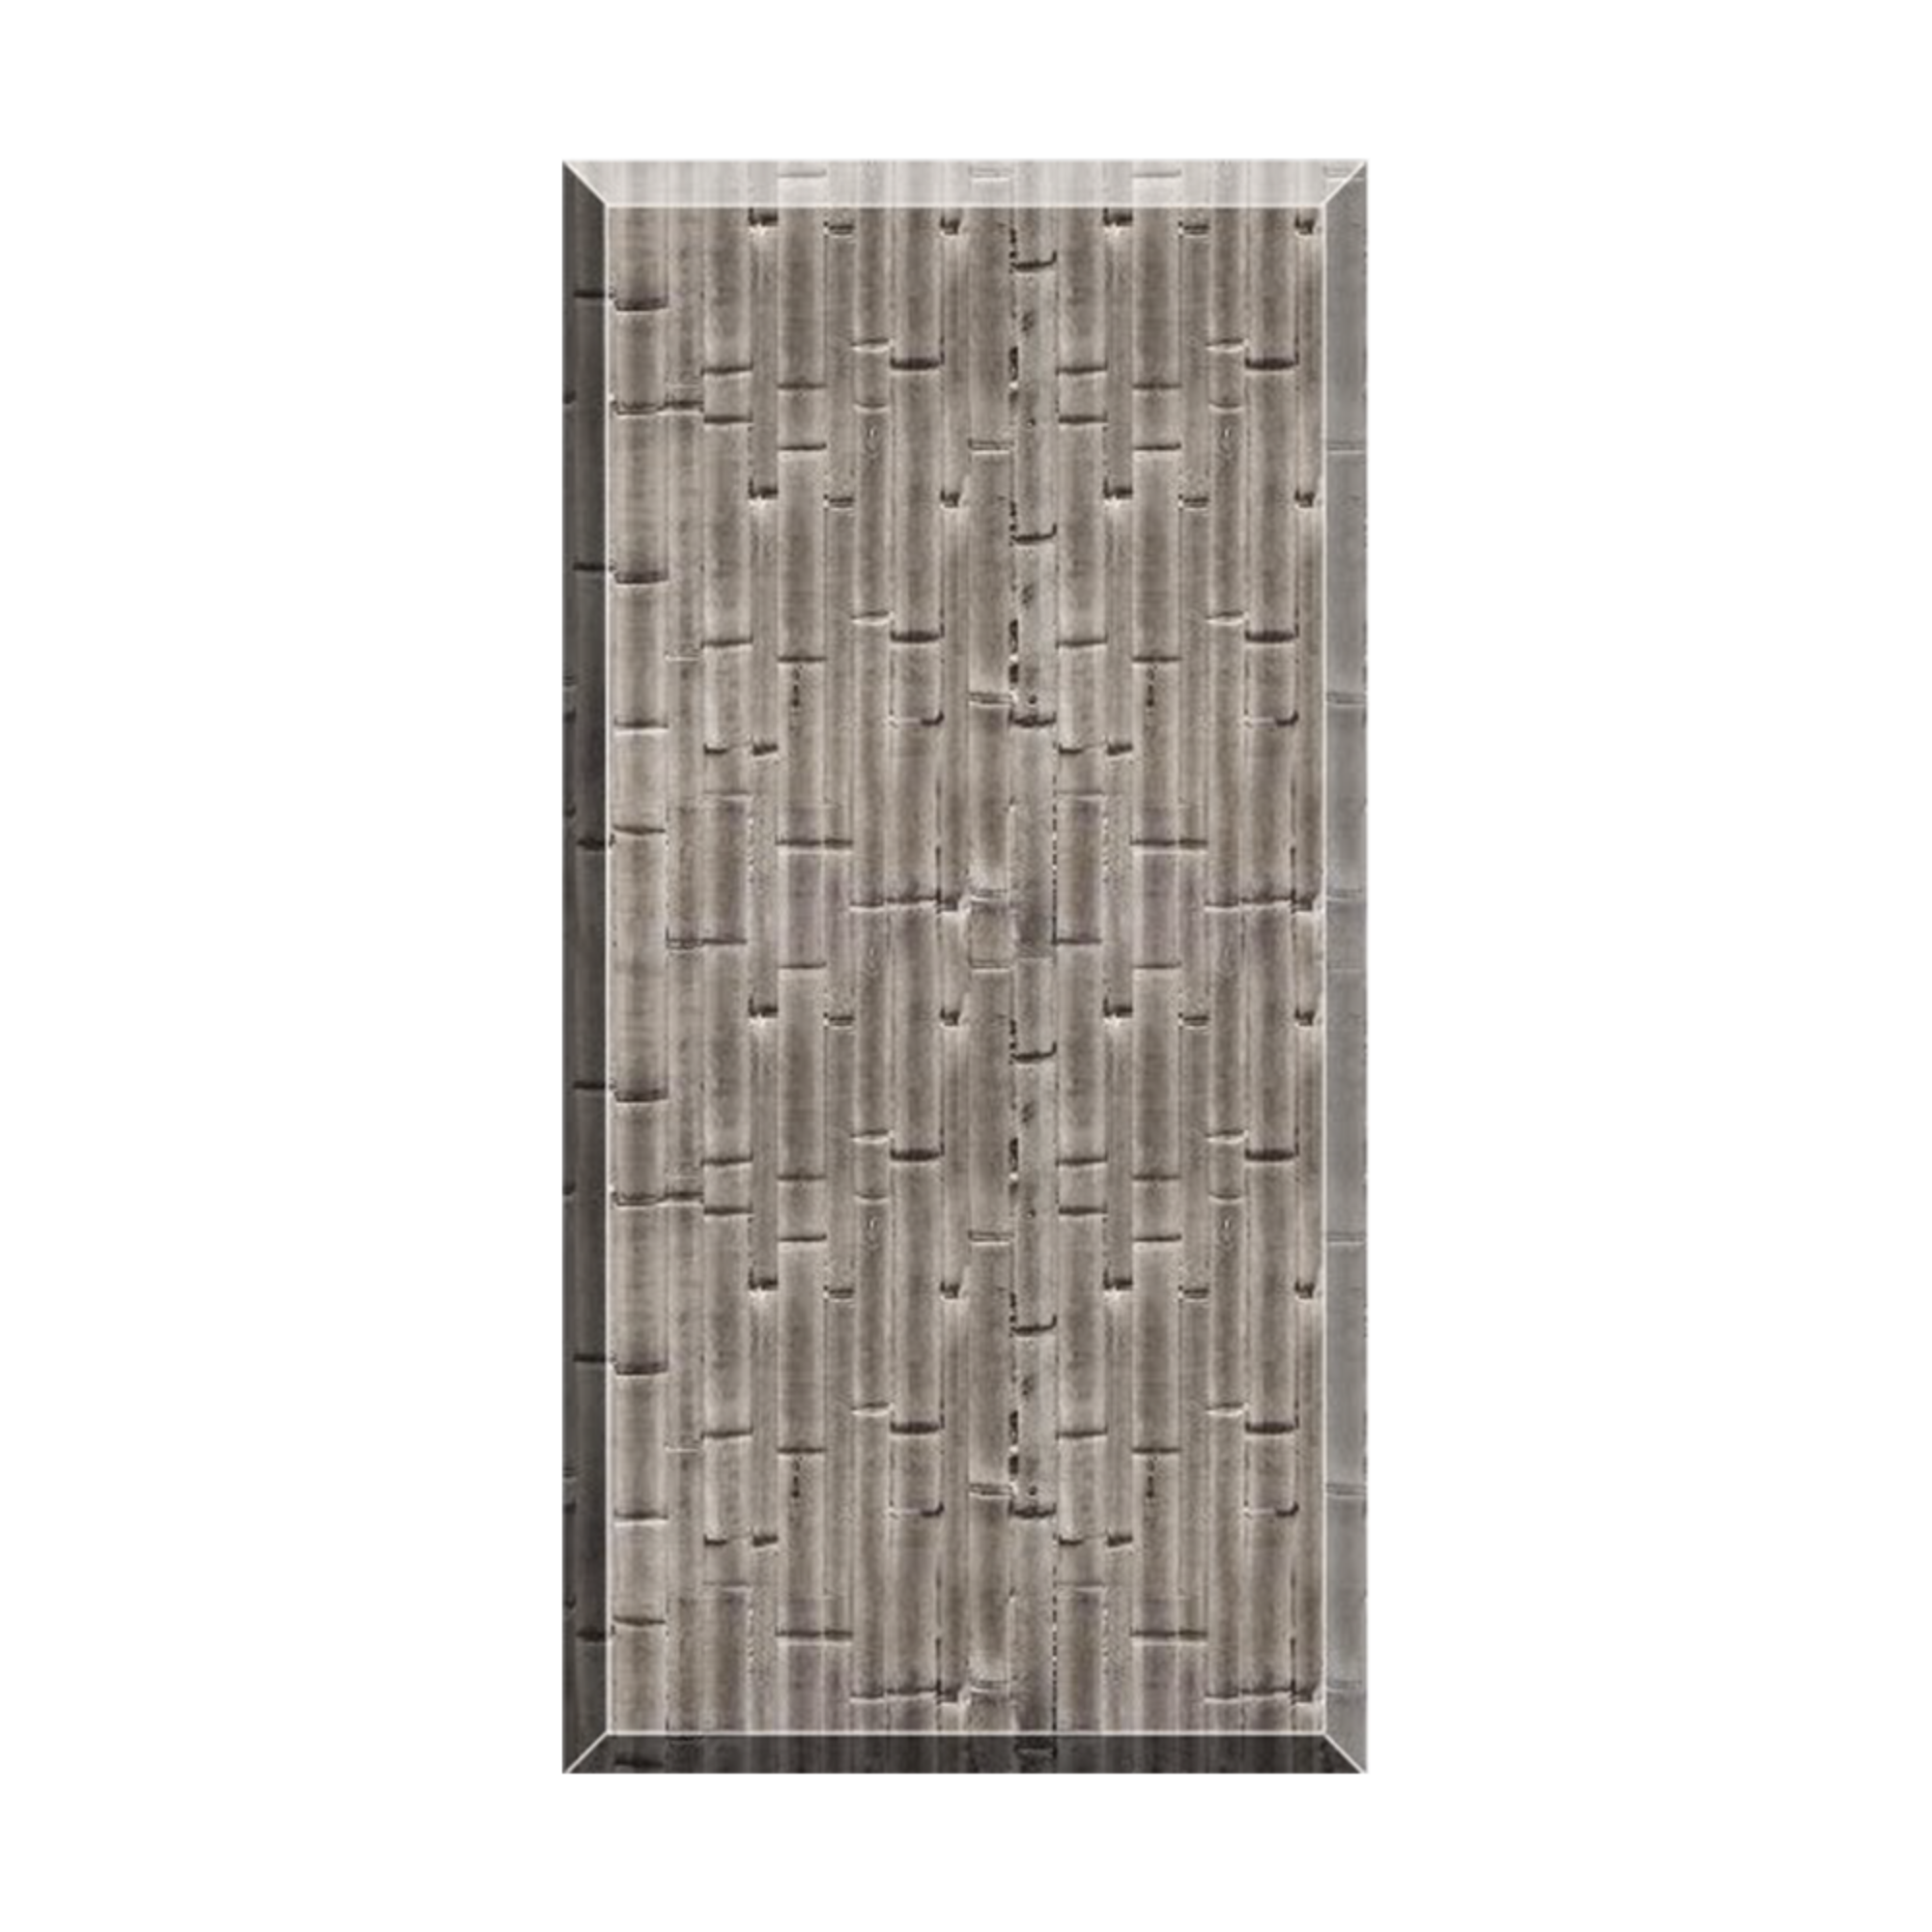 Bamboo Concrete Concrete Board